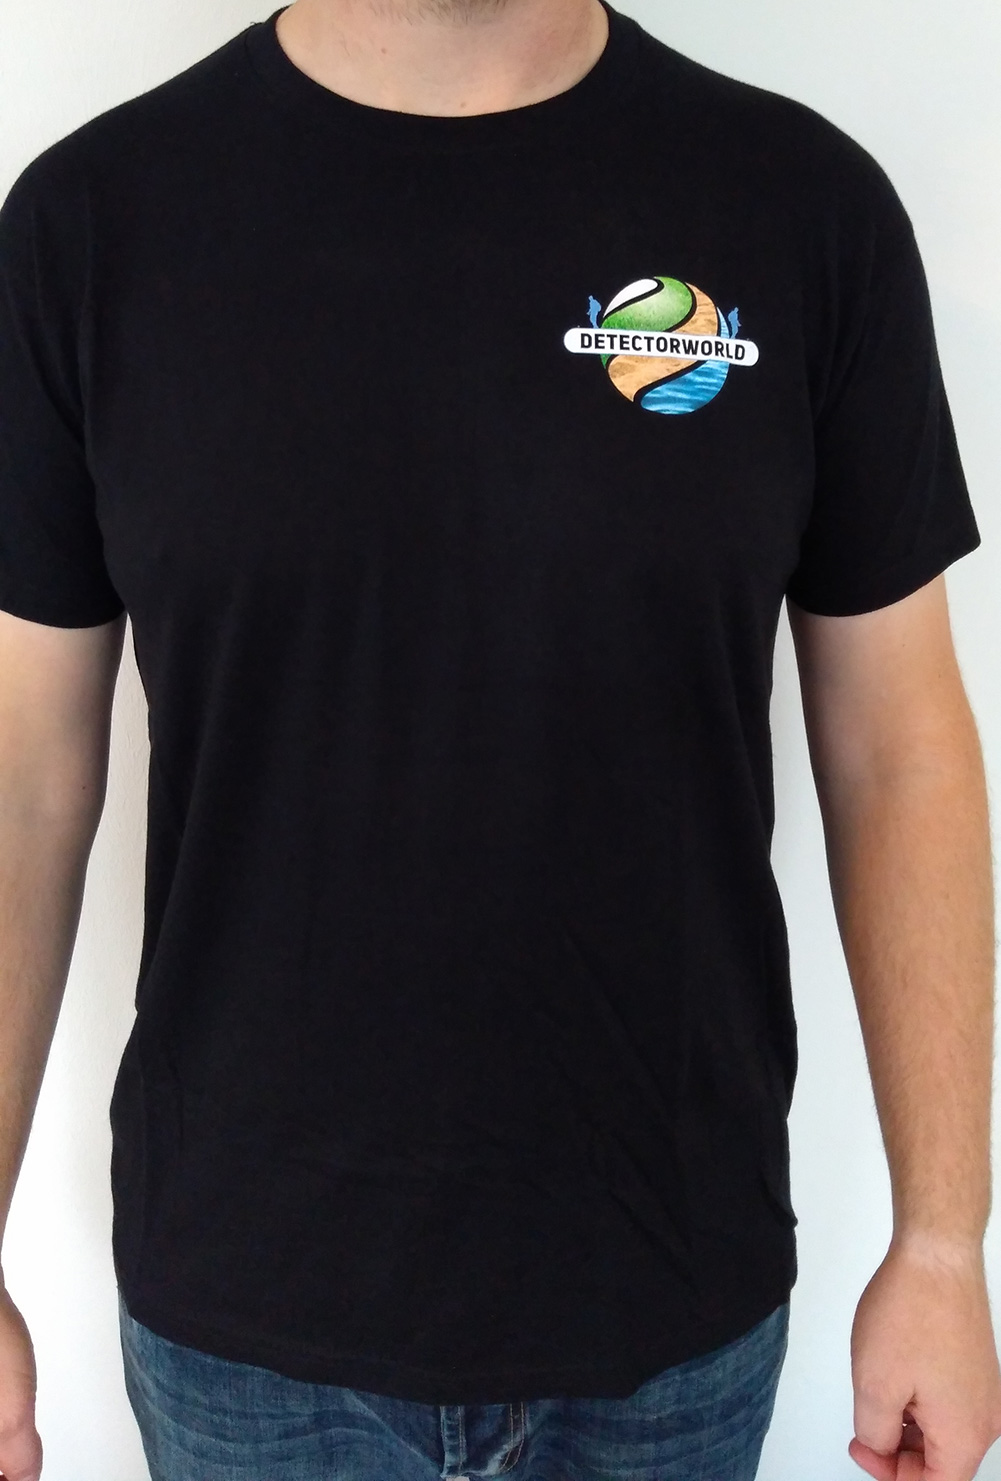 Detectorworld T-Shirt